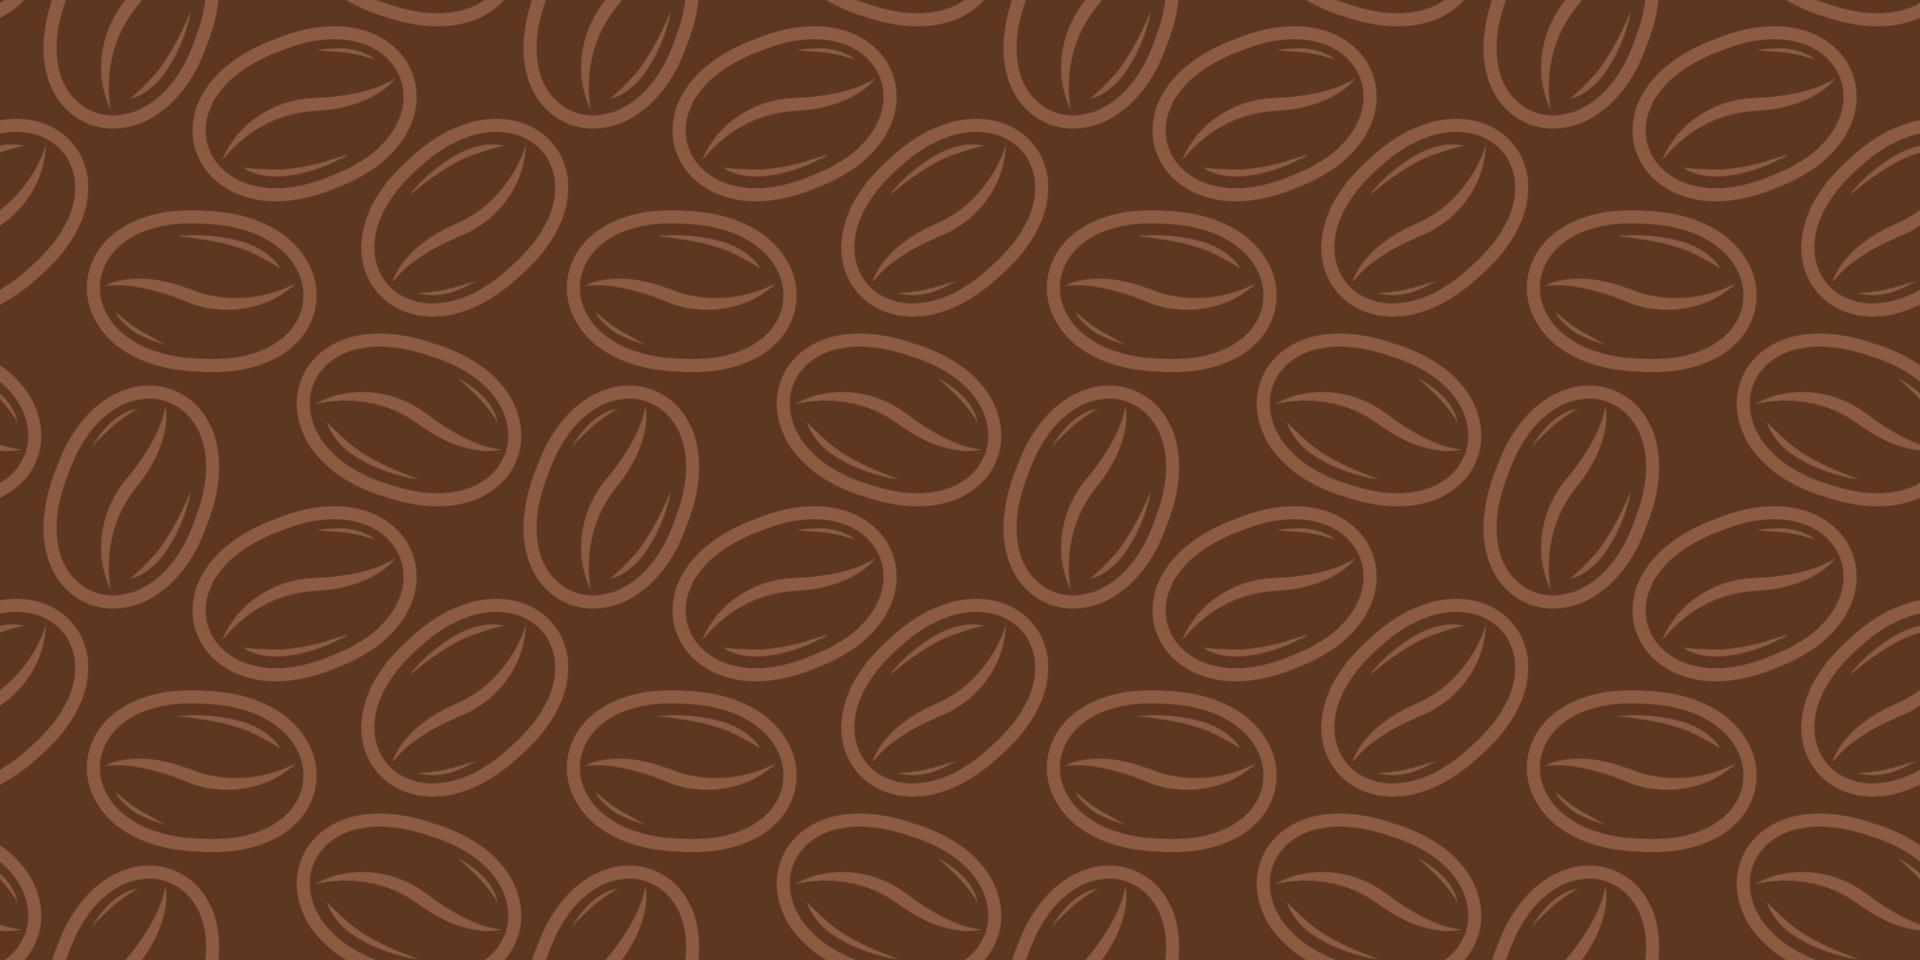 vektor sömlös mönster med kaffe bönor på beige bakgrund i retro stil.